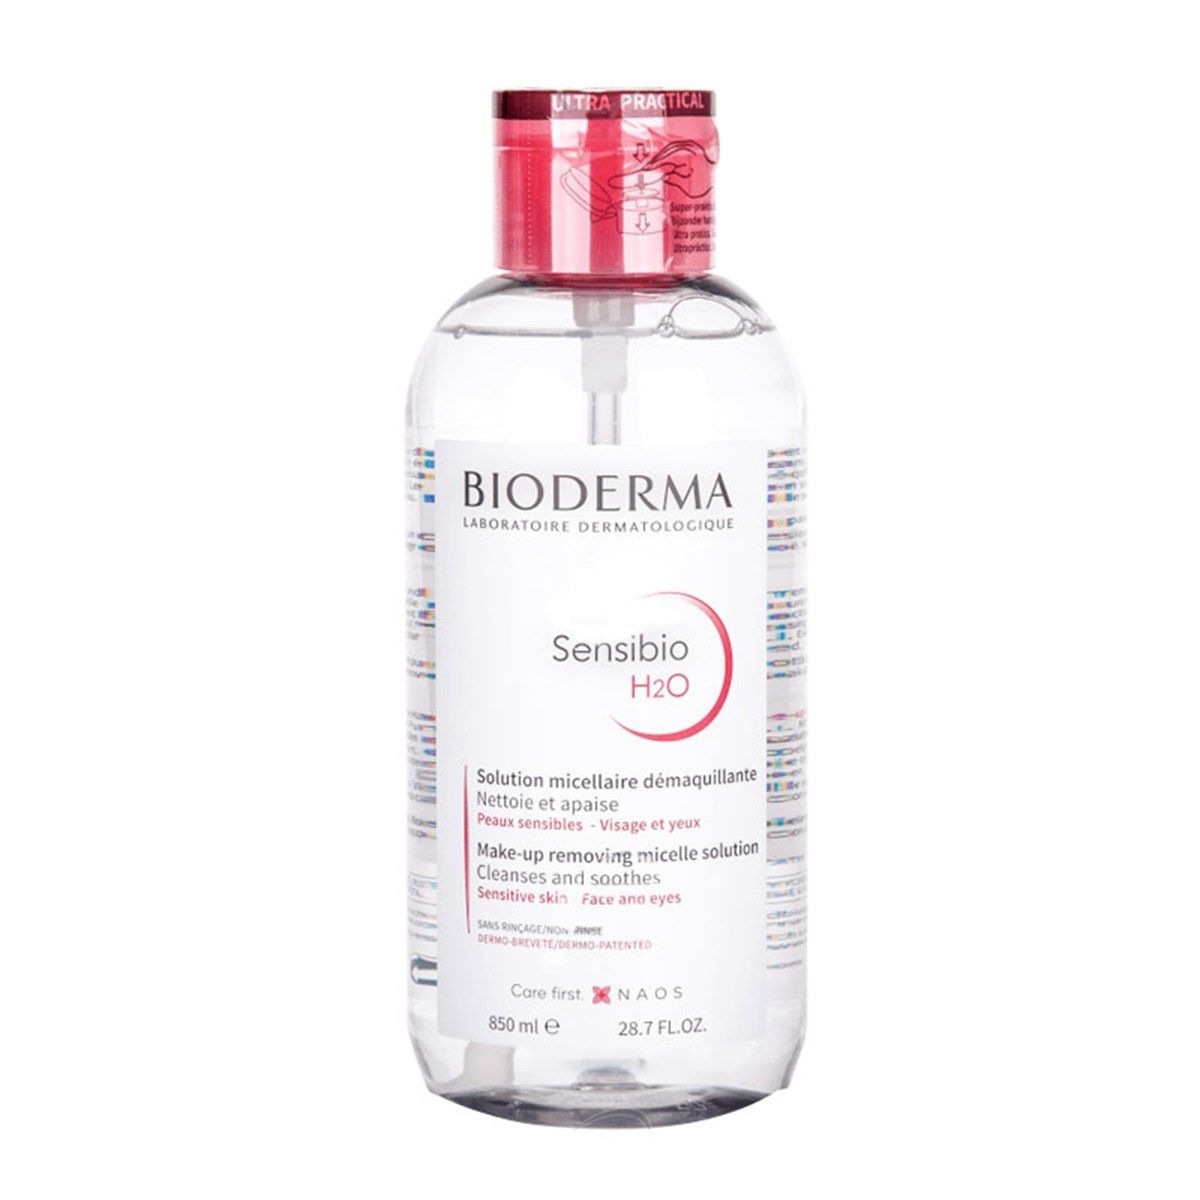 Bioderma - Sensibio, H2O Soothing Micellar Cleansing Water and